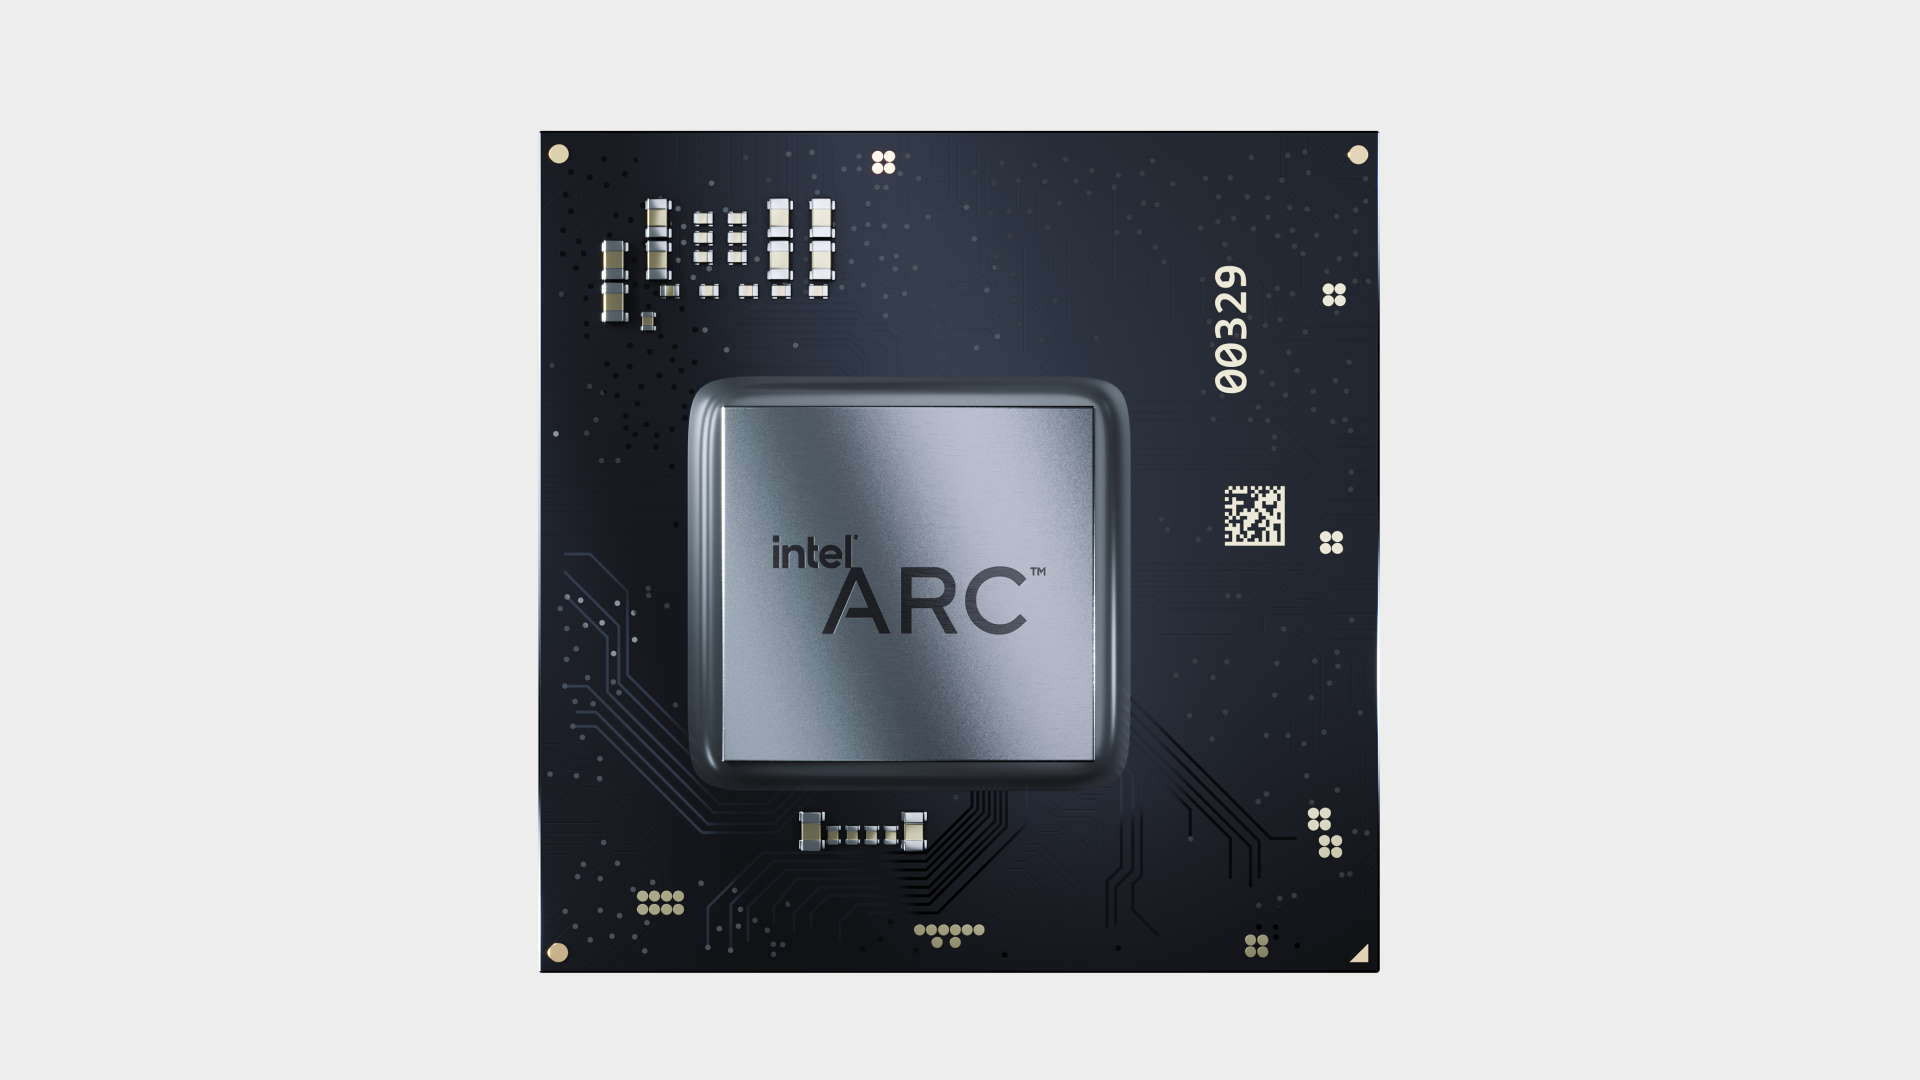 Intel Arc GPU'ları, AV1 kodlamasını ve kod çözmesini destekleyecektir